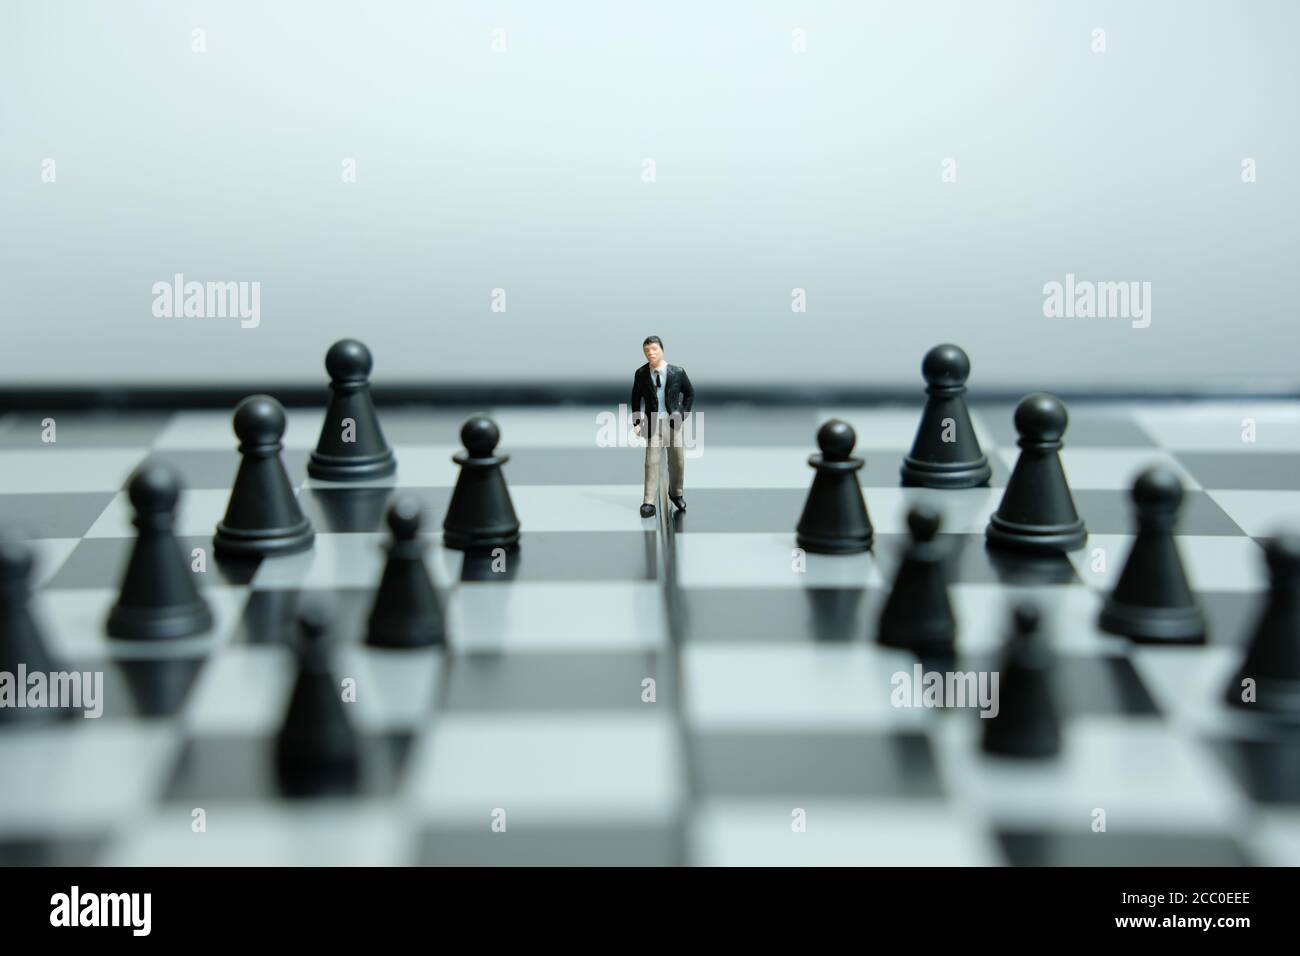 Business-Strategie konzeptuelles Foto - Miniatur des Geschäftsmannes, der vorwärts geht In der Mitte des Schachspiels auf einem Schachbrett Stockfoto